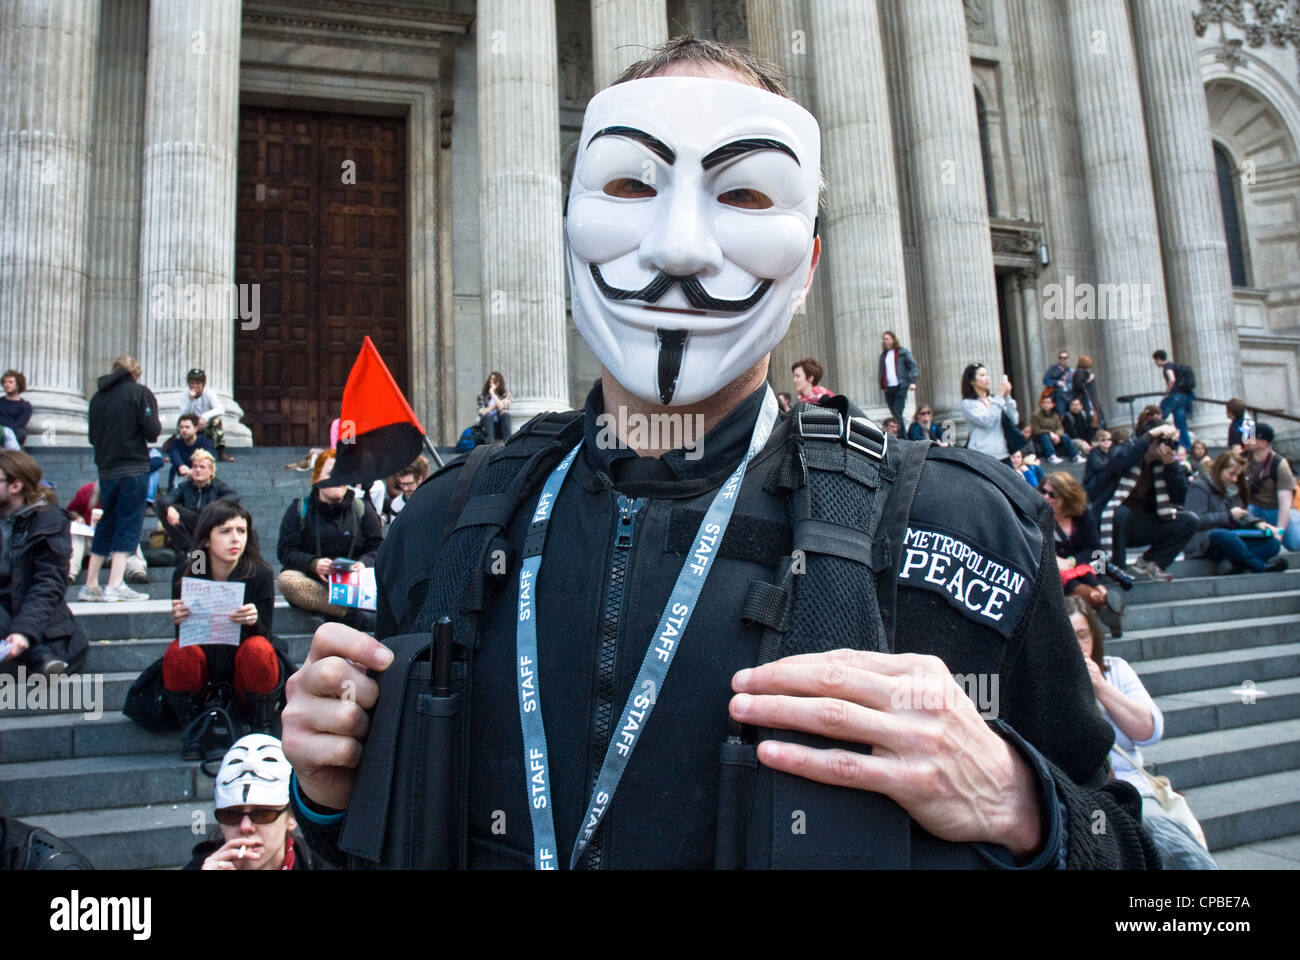 Besetzen, London UK. Demonstration gegen Kapitalismus, Teil eines globalen Aktionstages. Demonstrant in anonymisierter Guy Fawkes Maske tragen 'Polizei Uniform'. Stockfoto